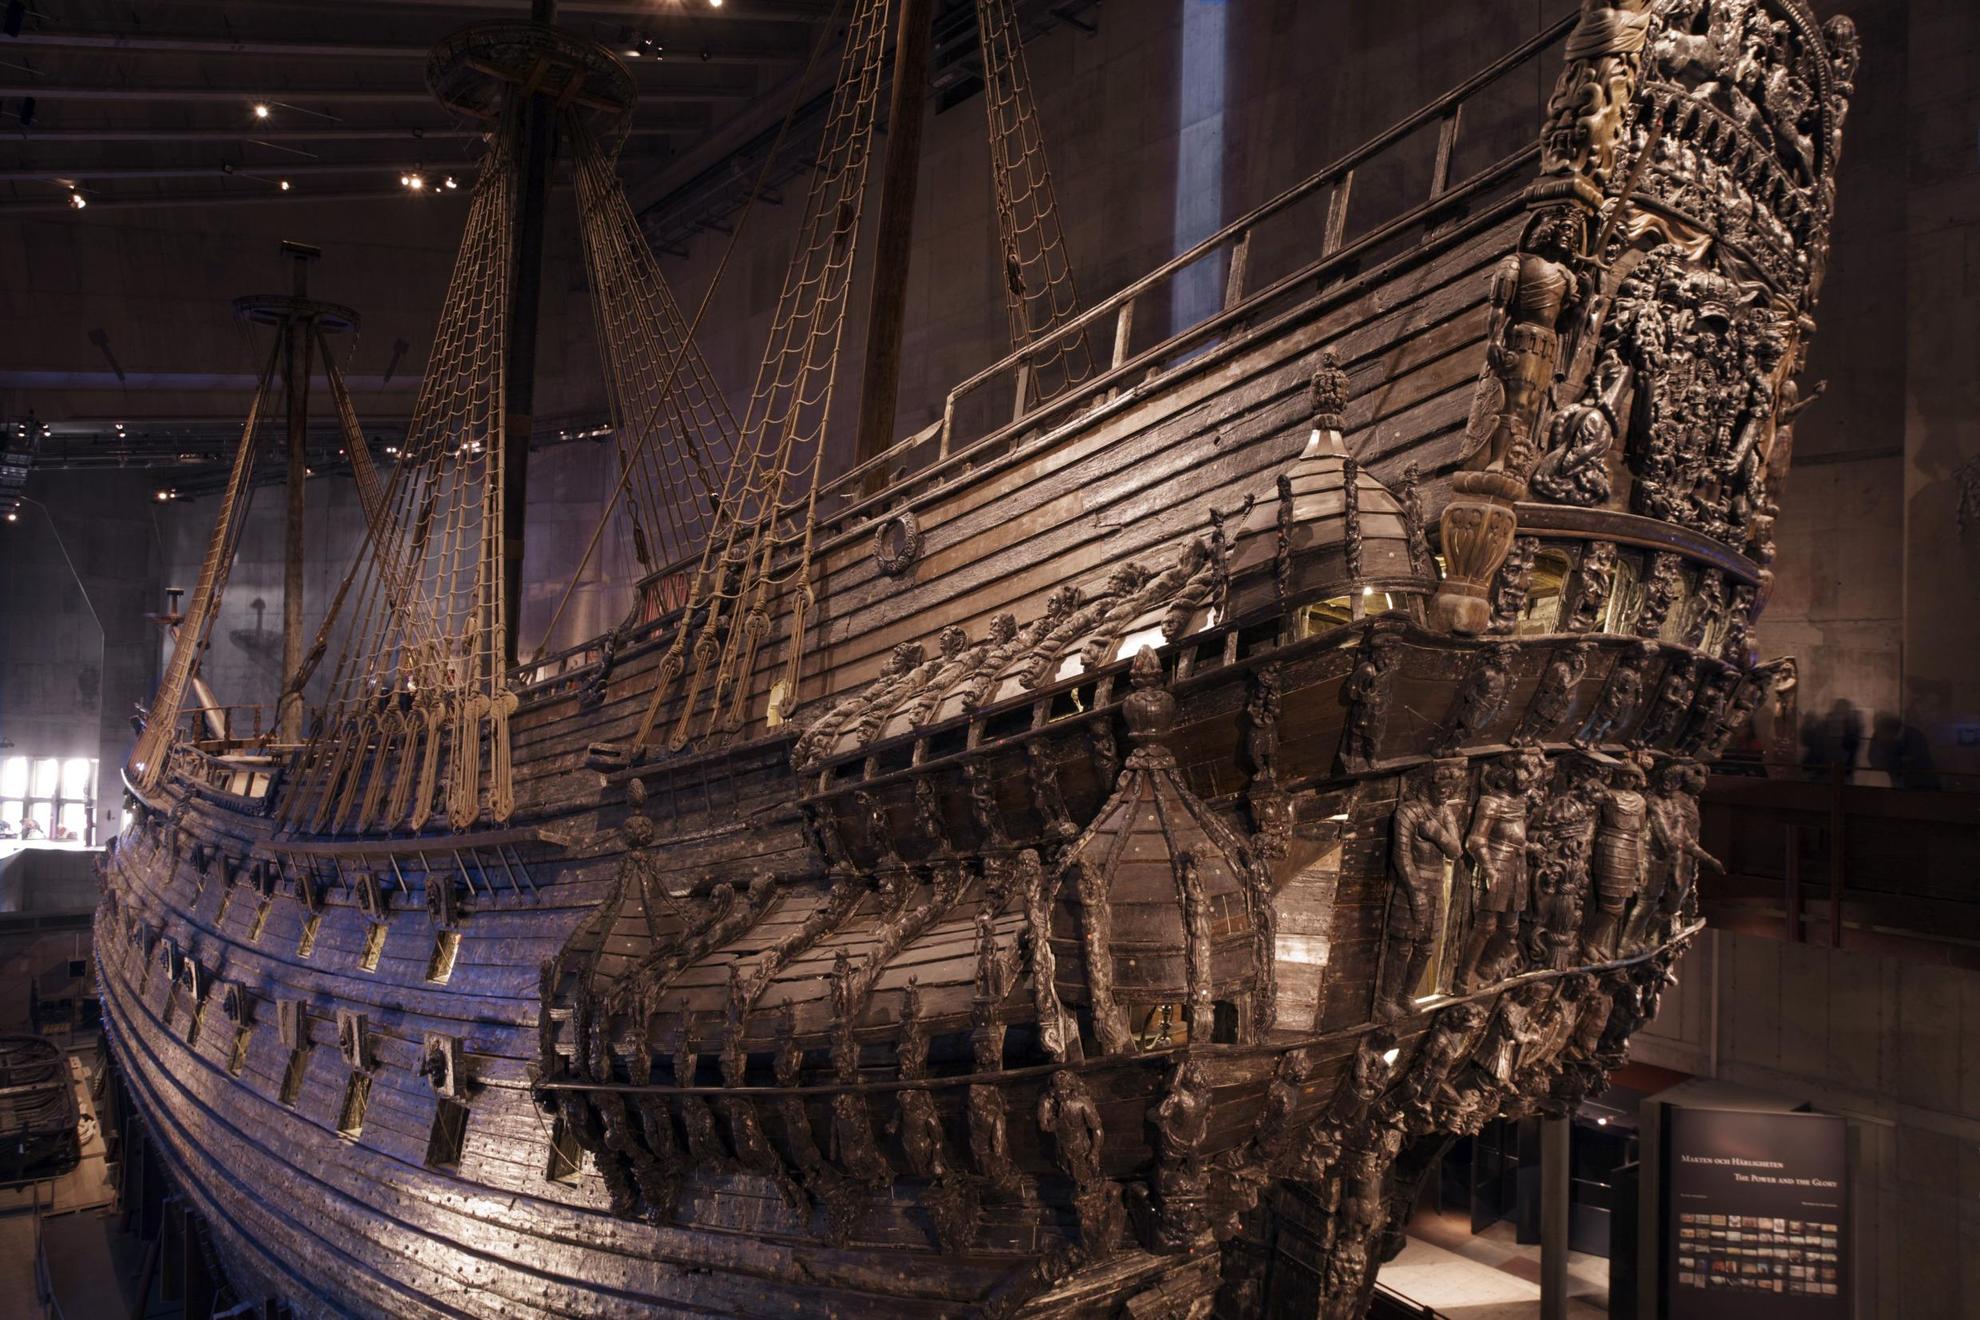 Le navire de guerre Vasa, datant du 17ème siècle, a été transporté et installé à l'intérieur du musée du même nom.